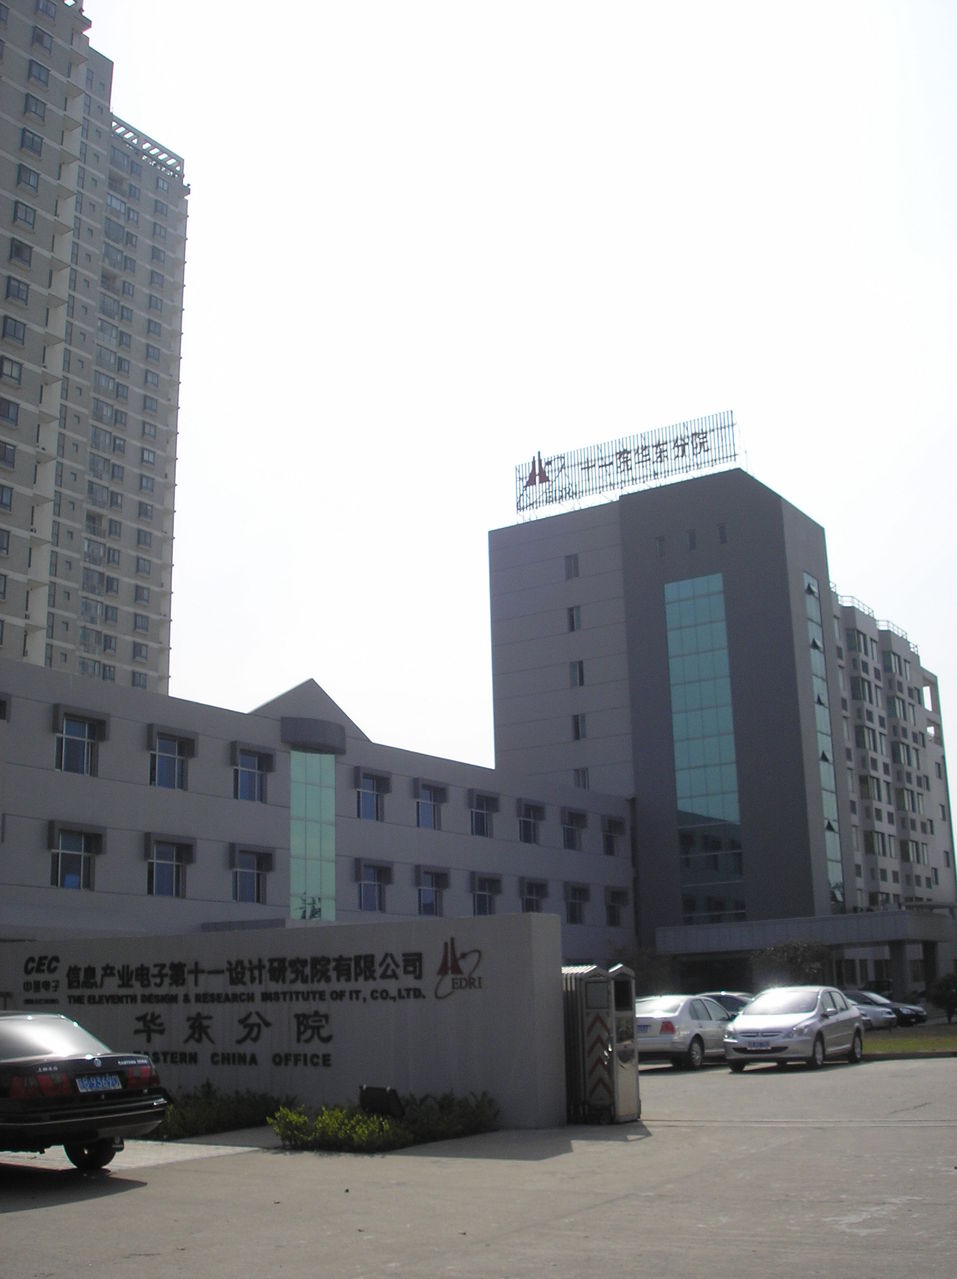 江蘇省的積體電路工程設計院